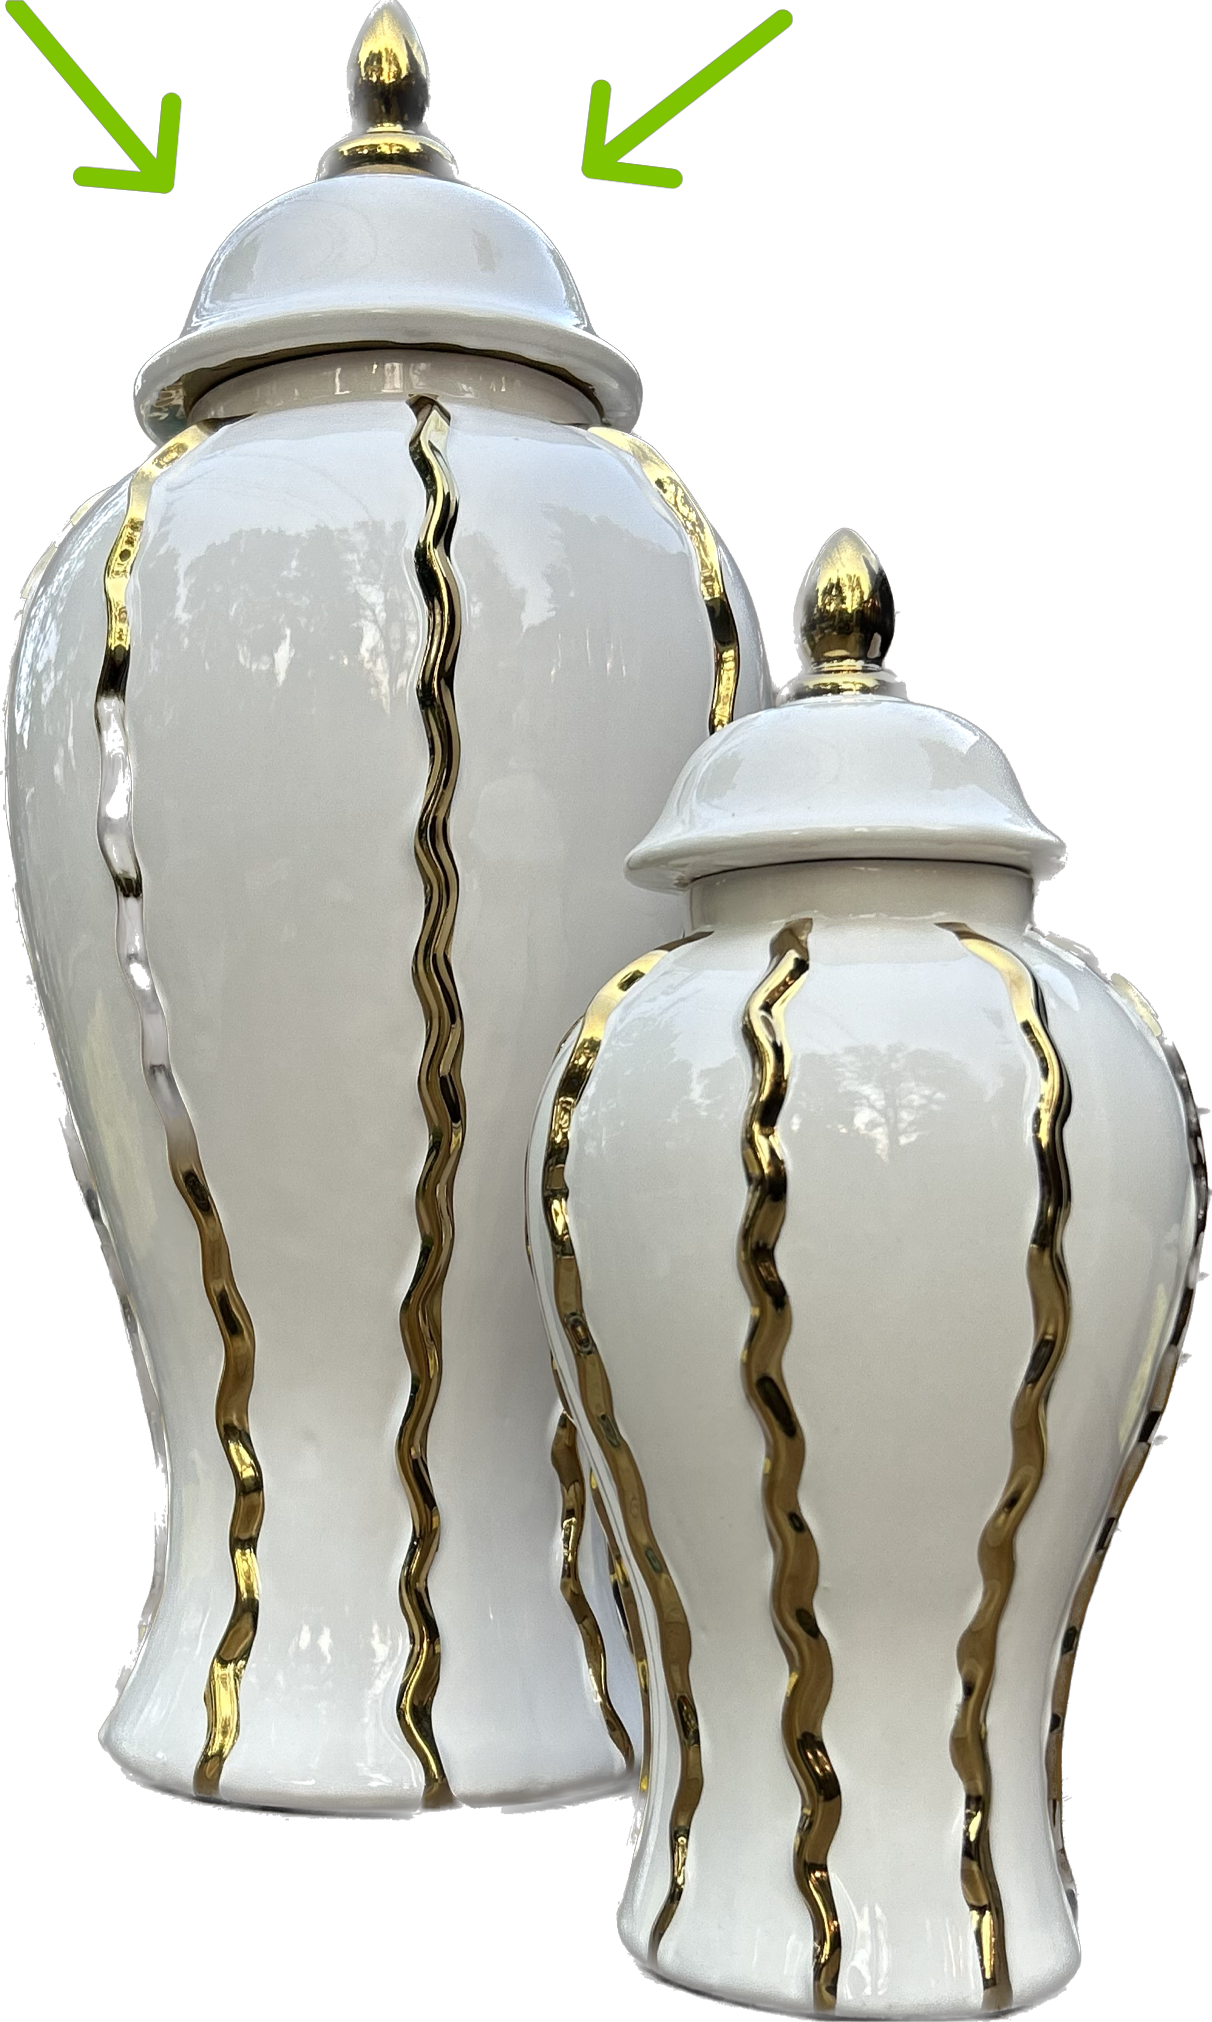 GLAZED WAVES Ceramic Ginger Jar Vase